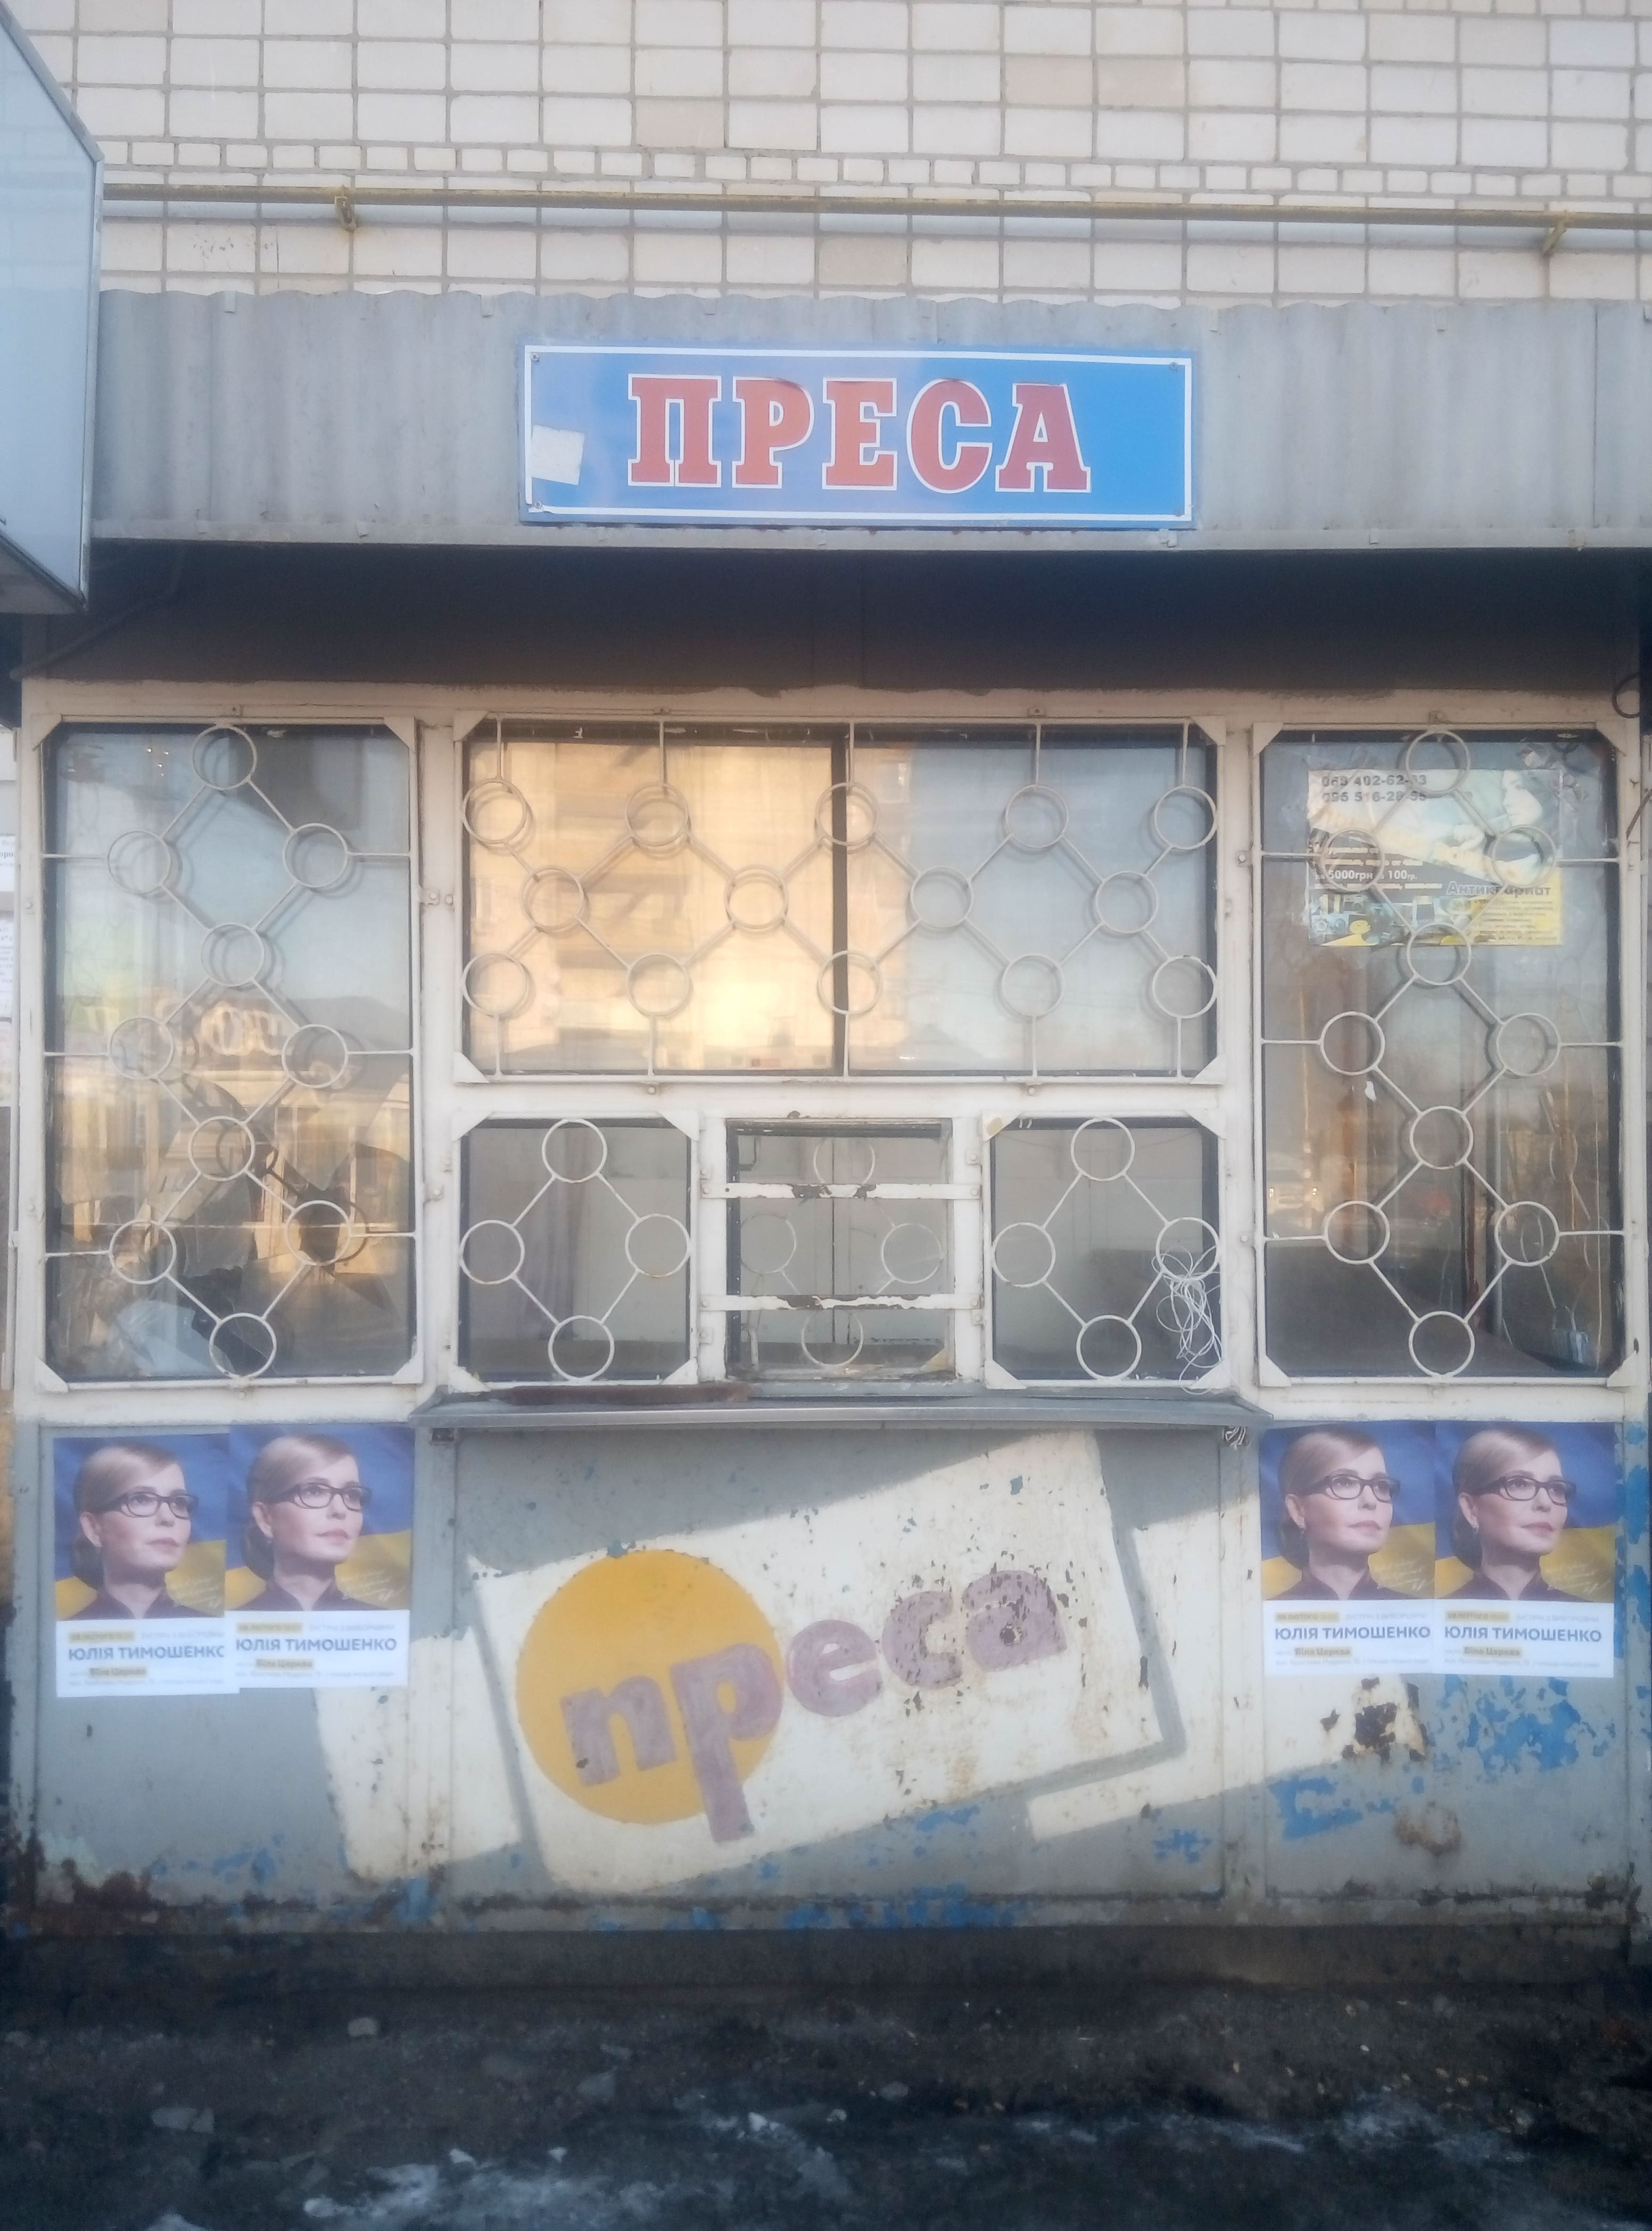 09 02 19 vizyt Tymoshenko BC plakaty1 Kyivska oblast min